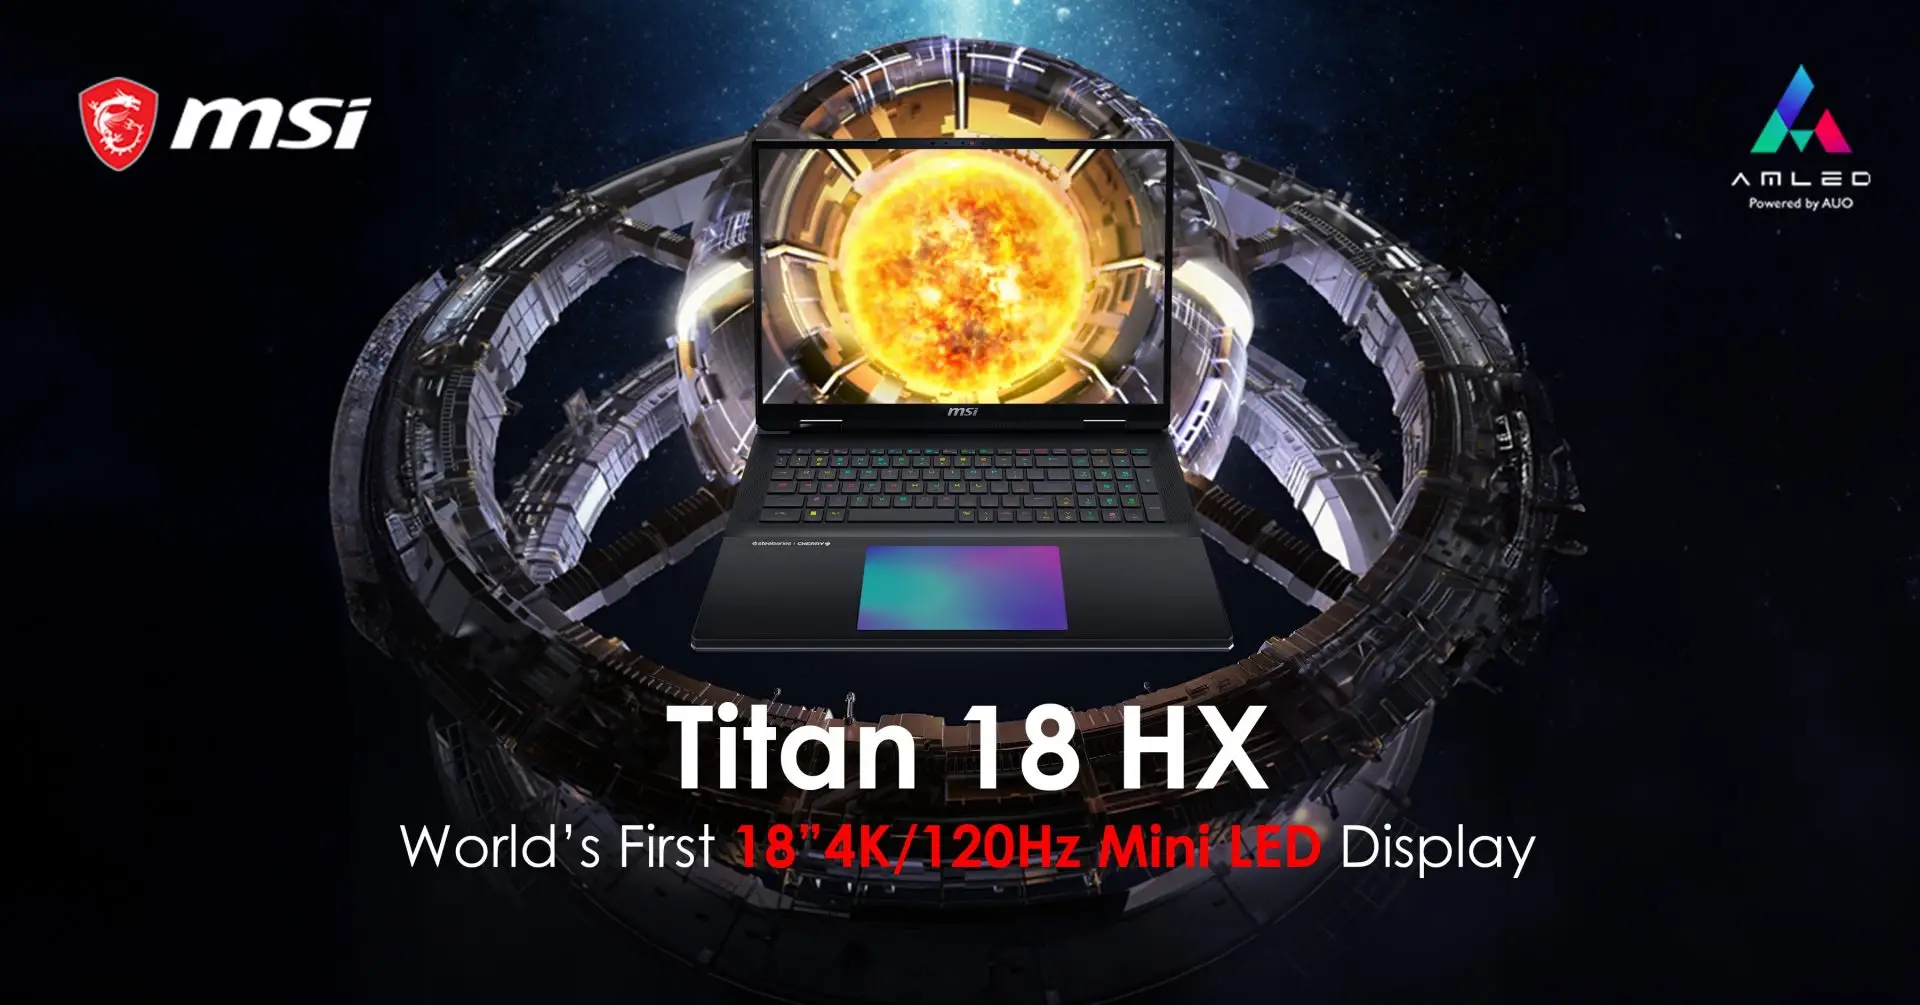 MSI Titan 18 HX Siap Meluncur, Laptop Gaming 18 Inci MiniLED 4K/120Hz Pertama di Dunia